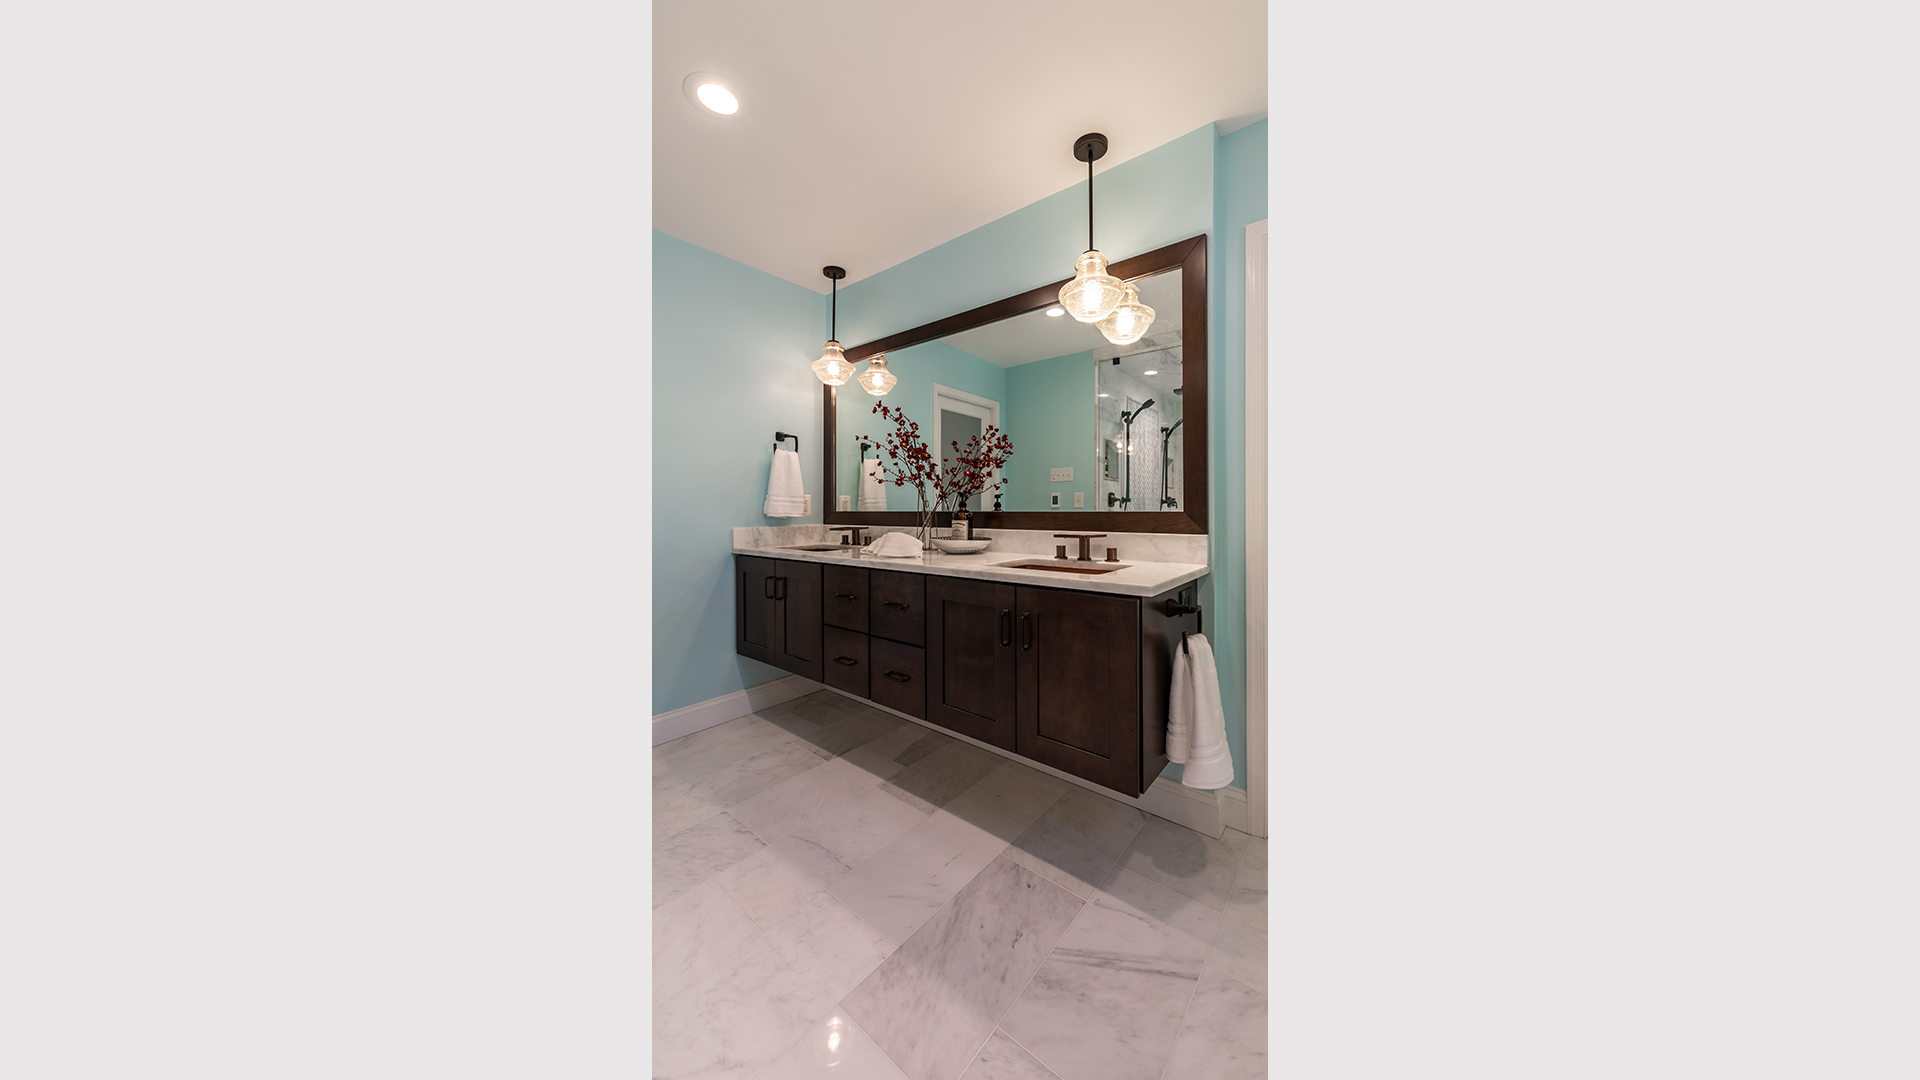 2021 Qualified Remodeler, Master Design Awards, Silver  Bathroom $50,000 to $75,000